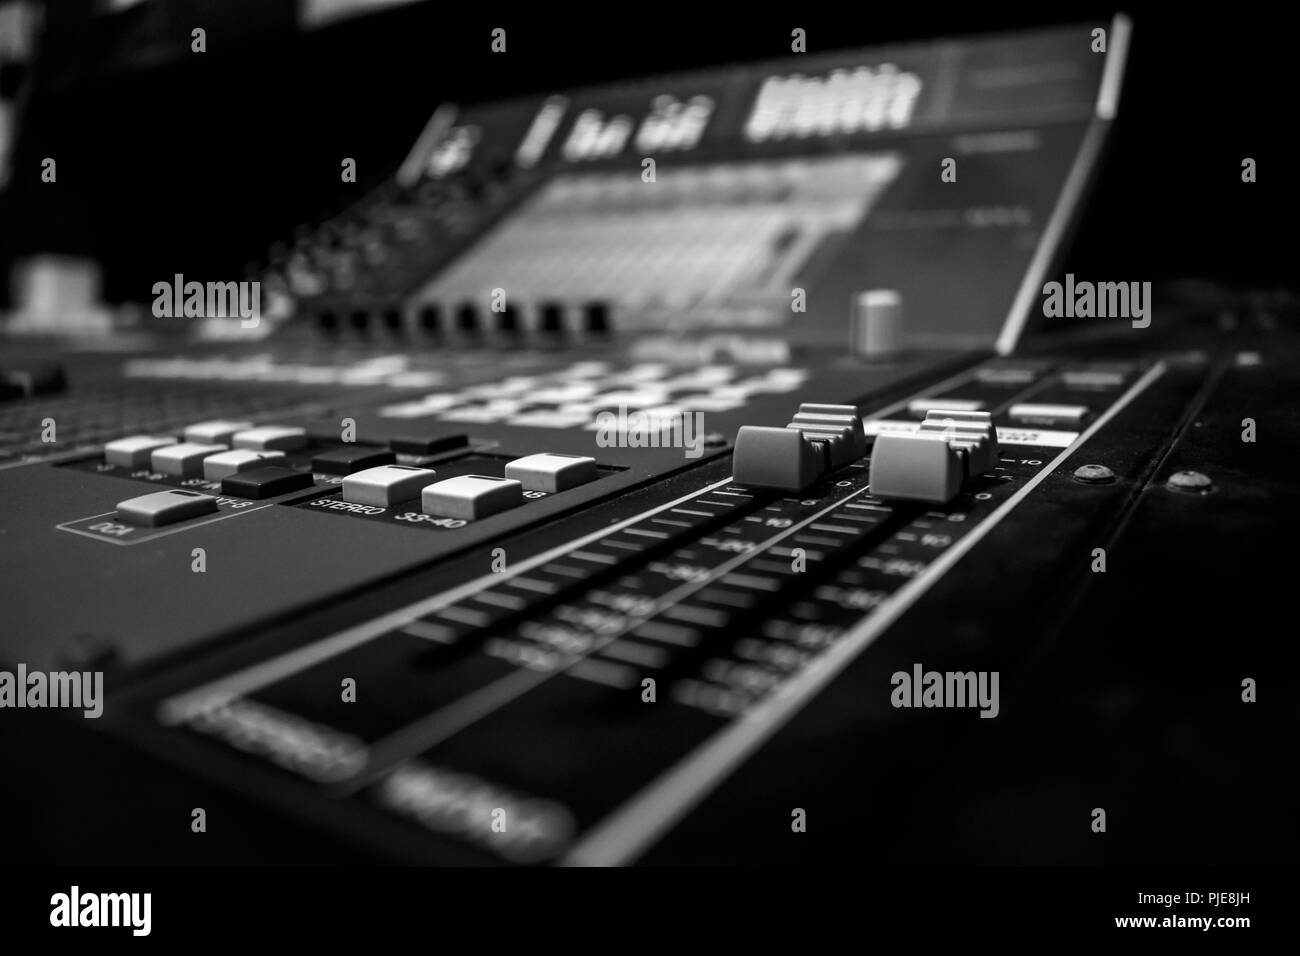 Ampia angolazione del Professional Audio console di mixaggio digitale con encoder di controllo, monocromatici in bianco e nero Foto Stock